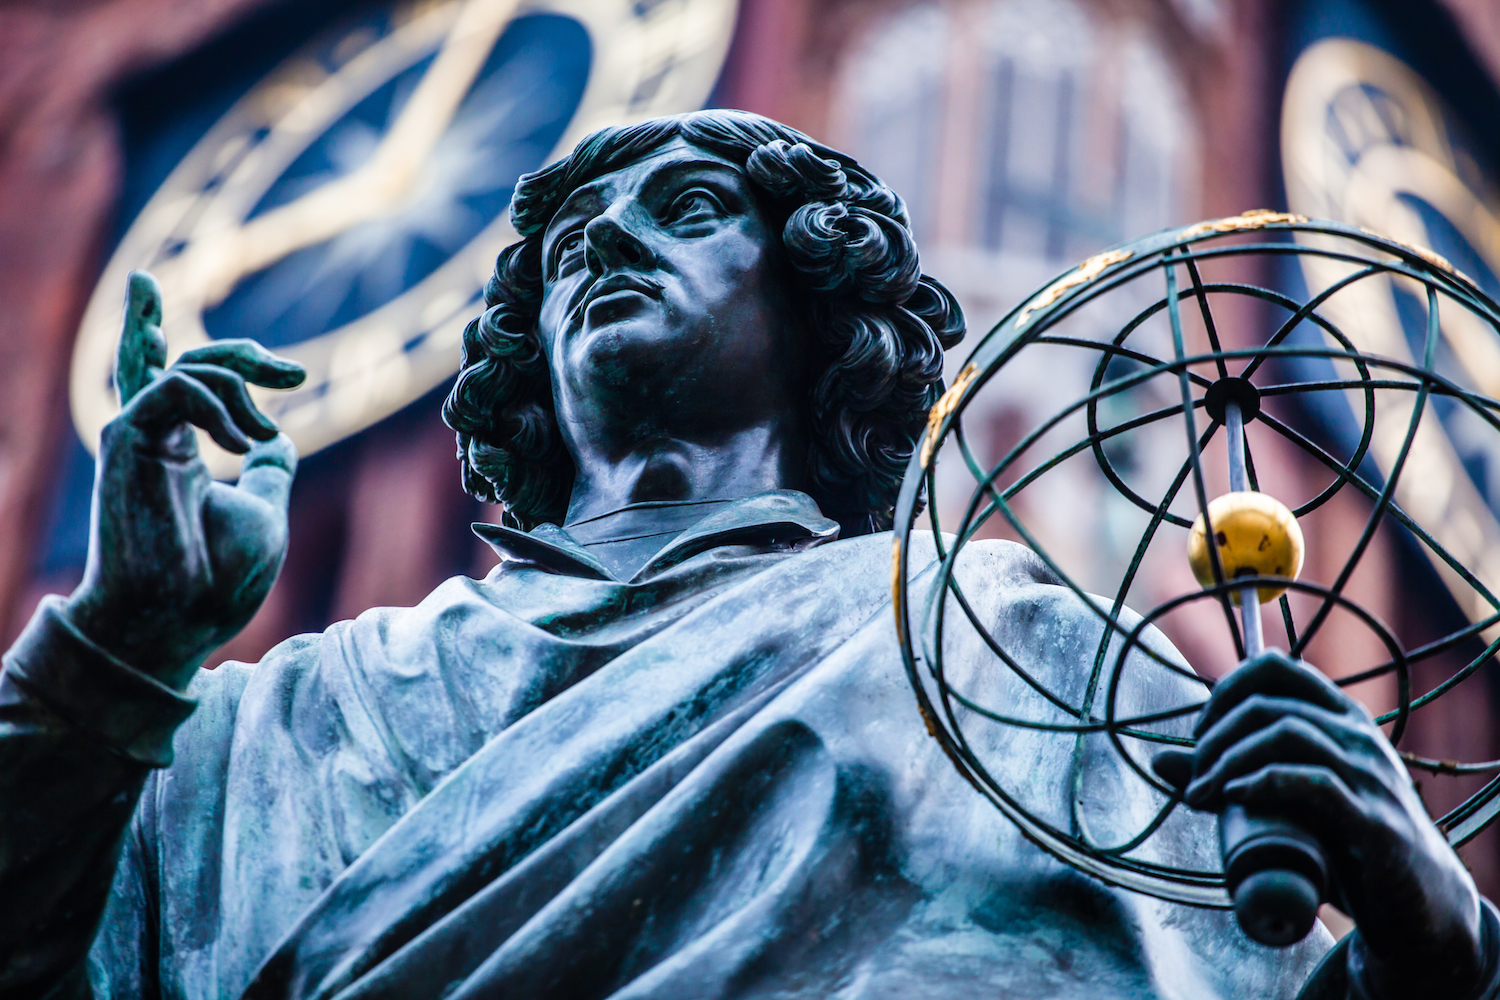 Le copernicium tire son nom de l’astronome Nicolas Copernic, père de la théorie héliocentrique. © Curioso, Shutterstock 